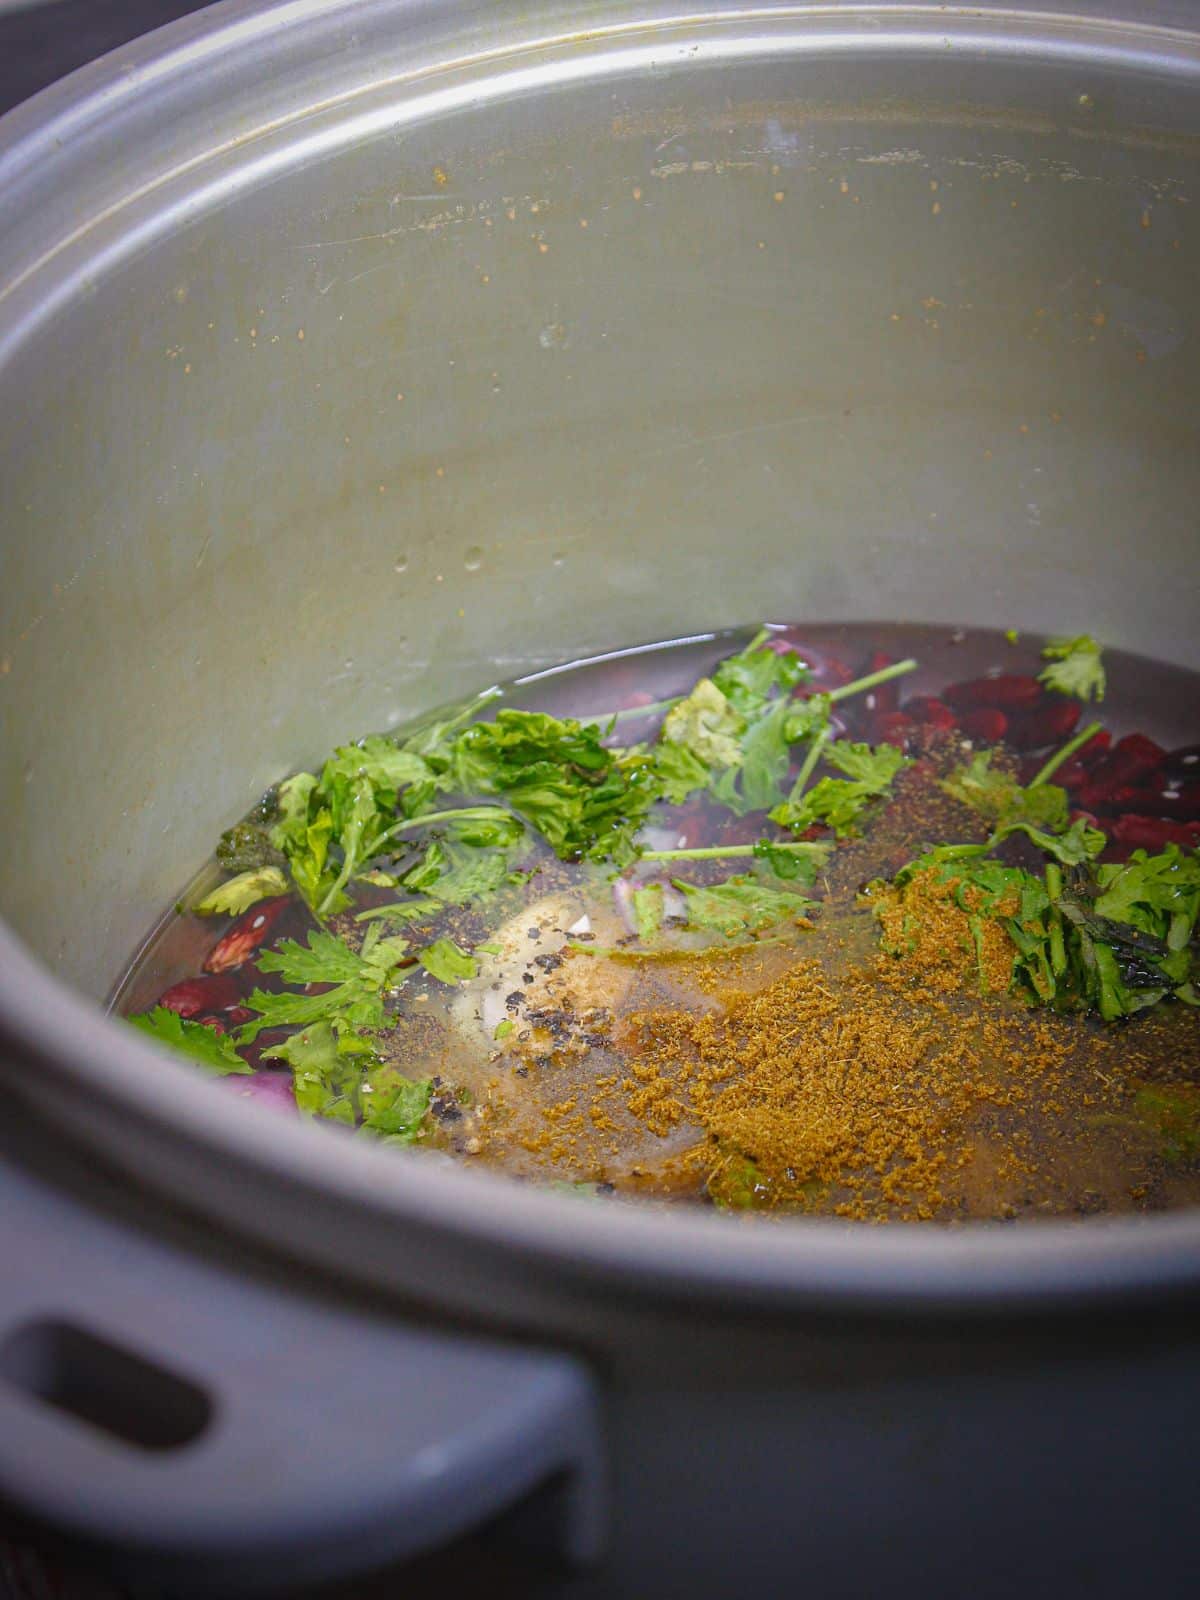 Add chicken bouillon to the pot